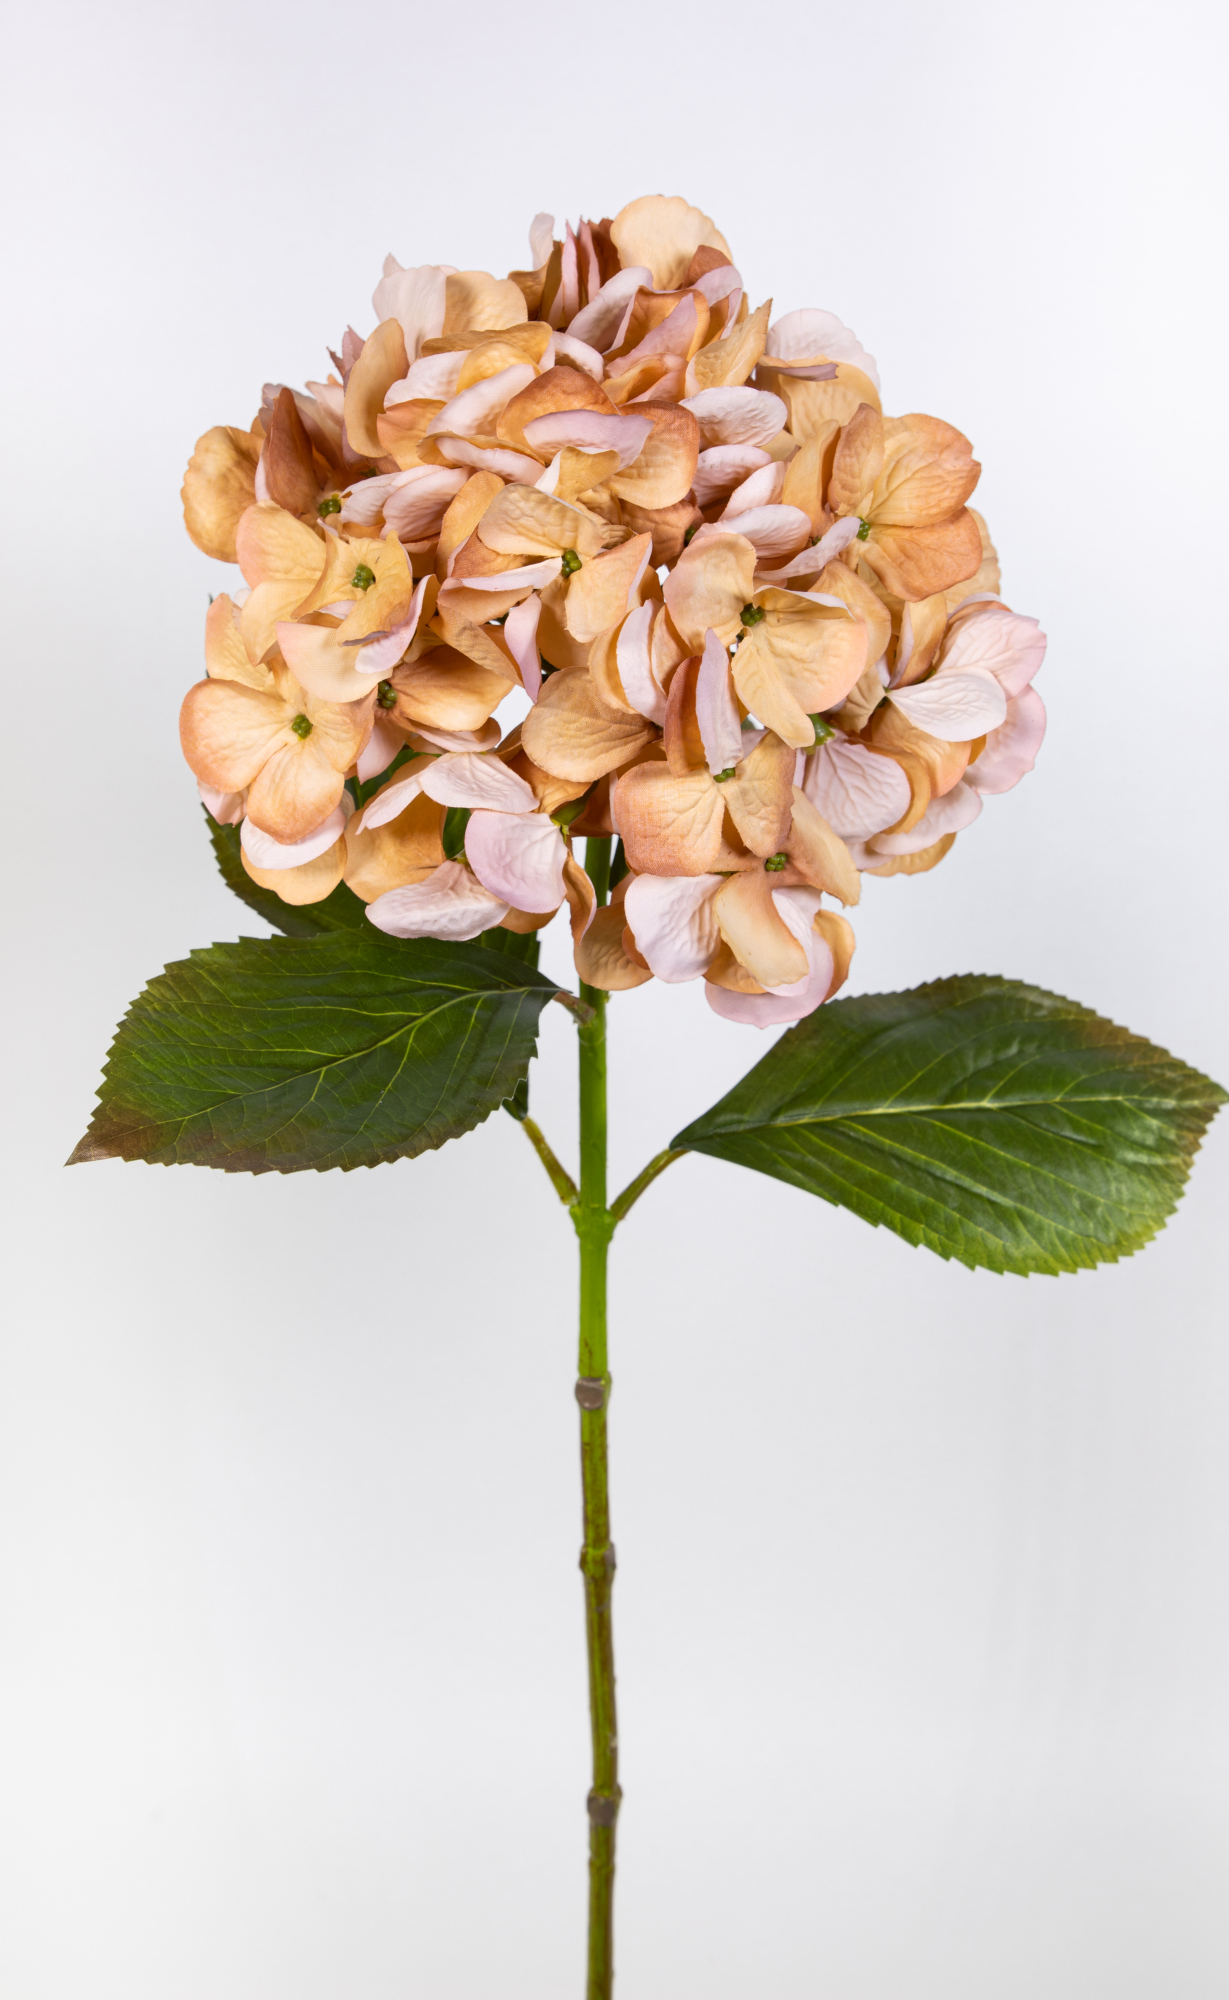 Hortensie 68cm gelb-hellgelb GA Seidenblumen Kunstlbumen künstliche Blumen Hortensien Hydrangea